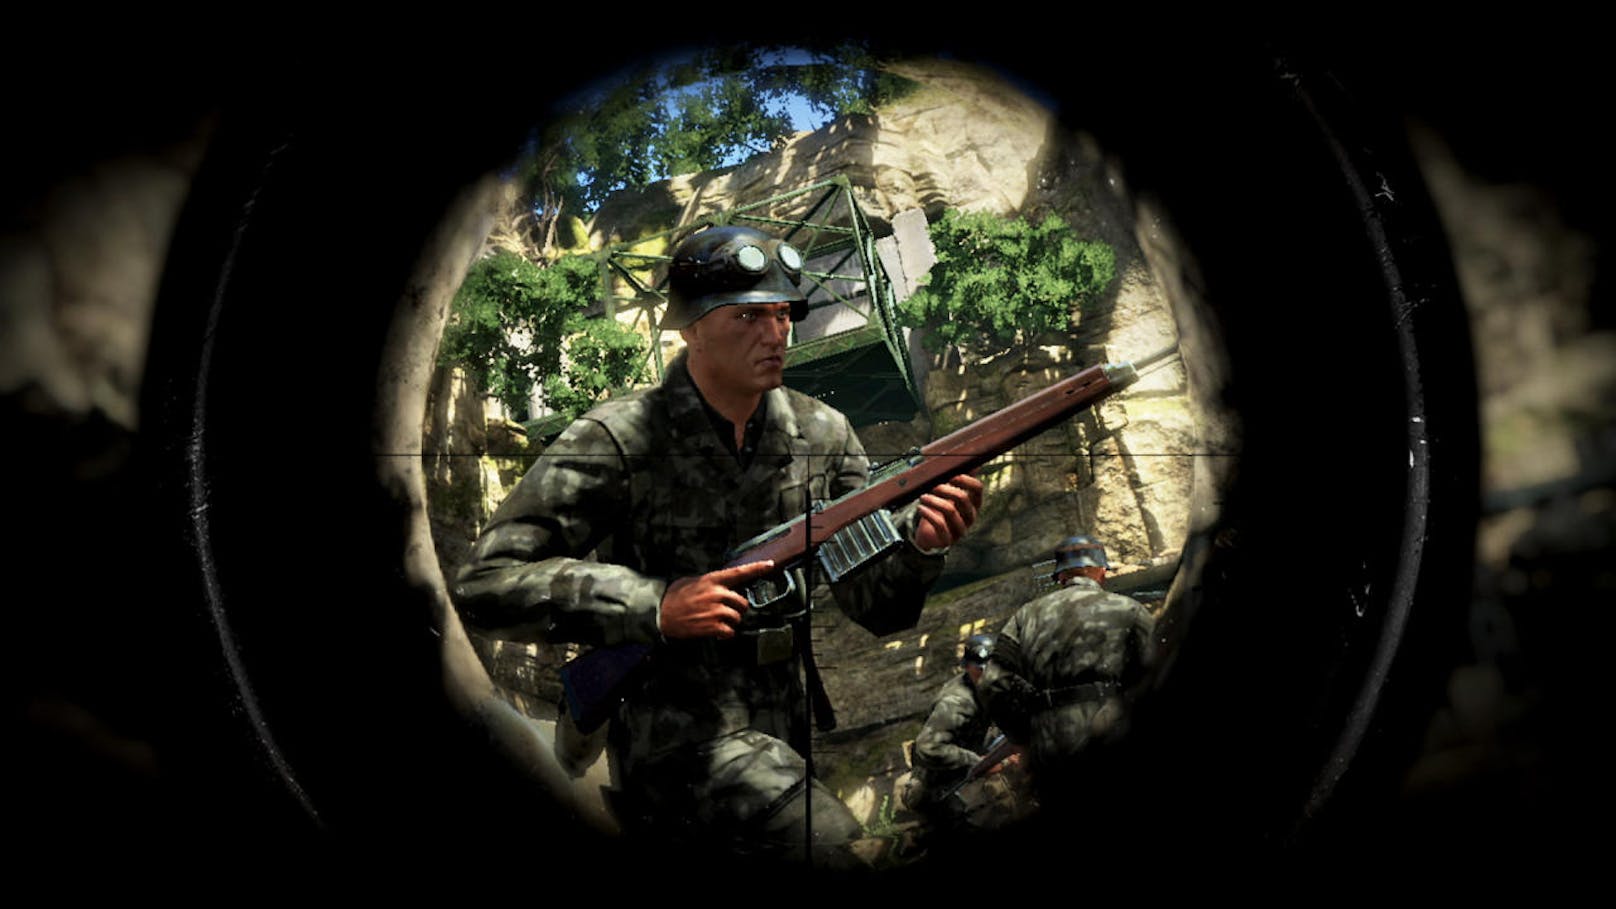 Auch bei "Sniper Elite 3" kann man durchaus von einer Simulation sprechen. Es gibt keinen linearen Weg zum Ziel, Spieler können Routen und Angriffe selbst bestimmen. Nur selten wird man in vorgegebene Gebiete oder Szenarien gezwängt.